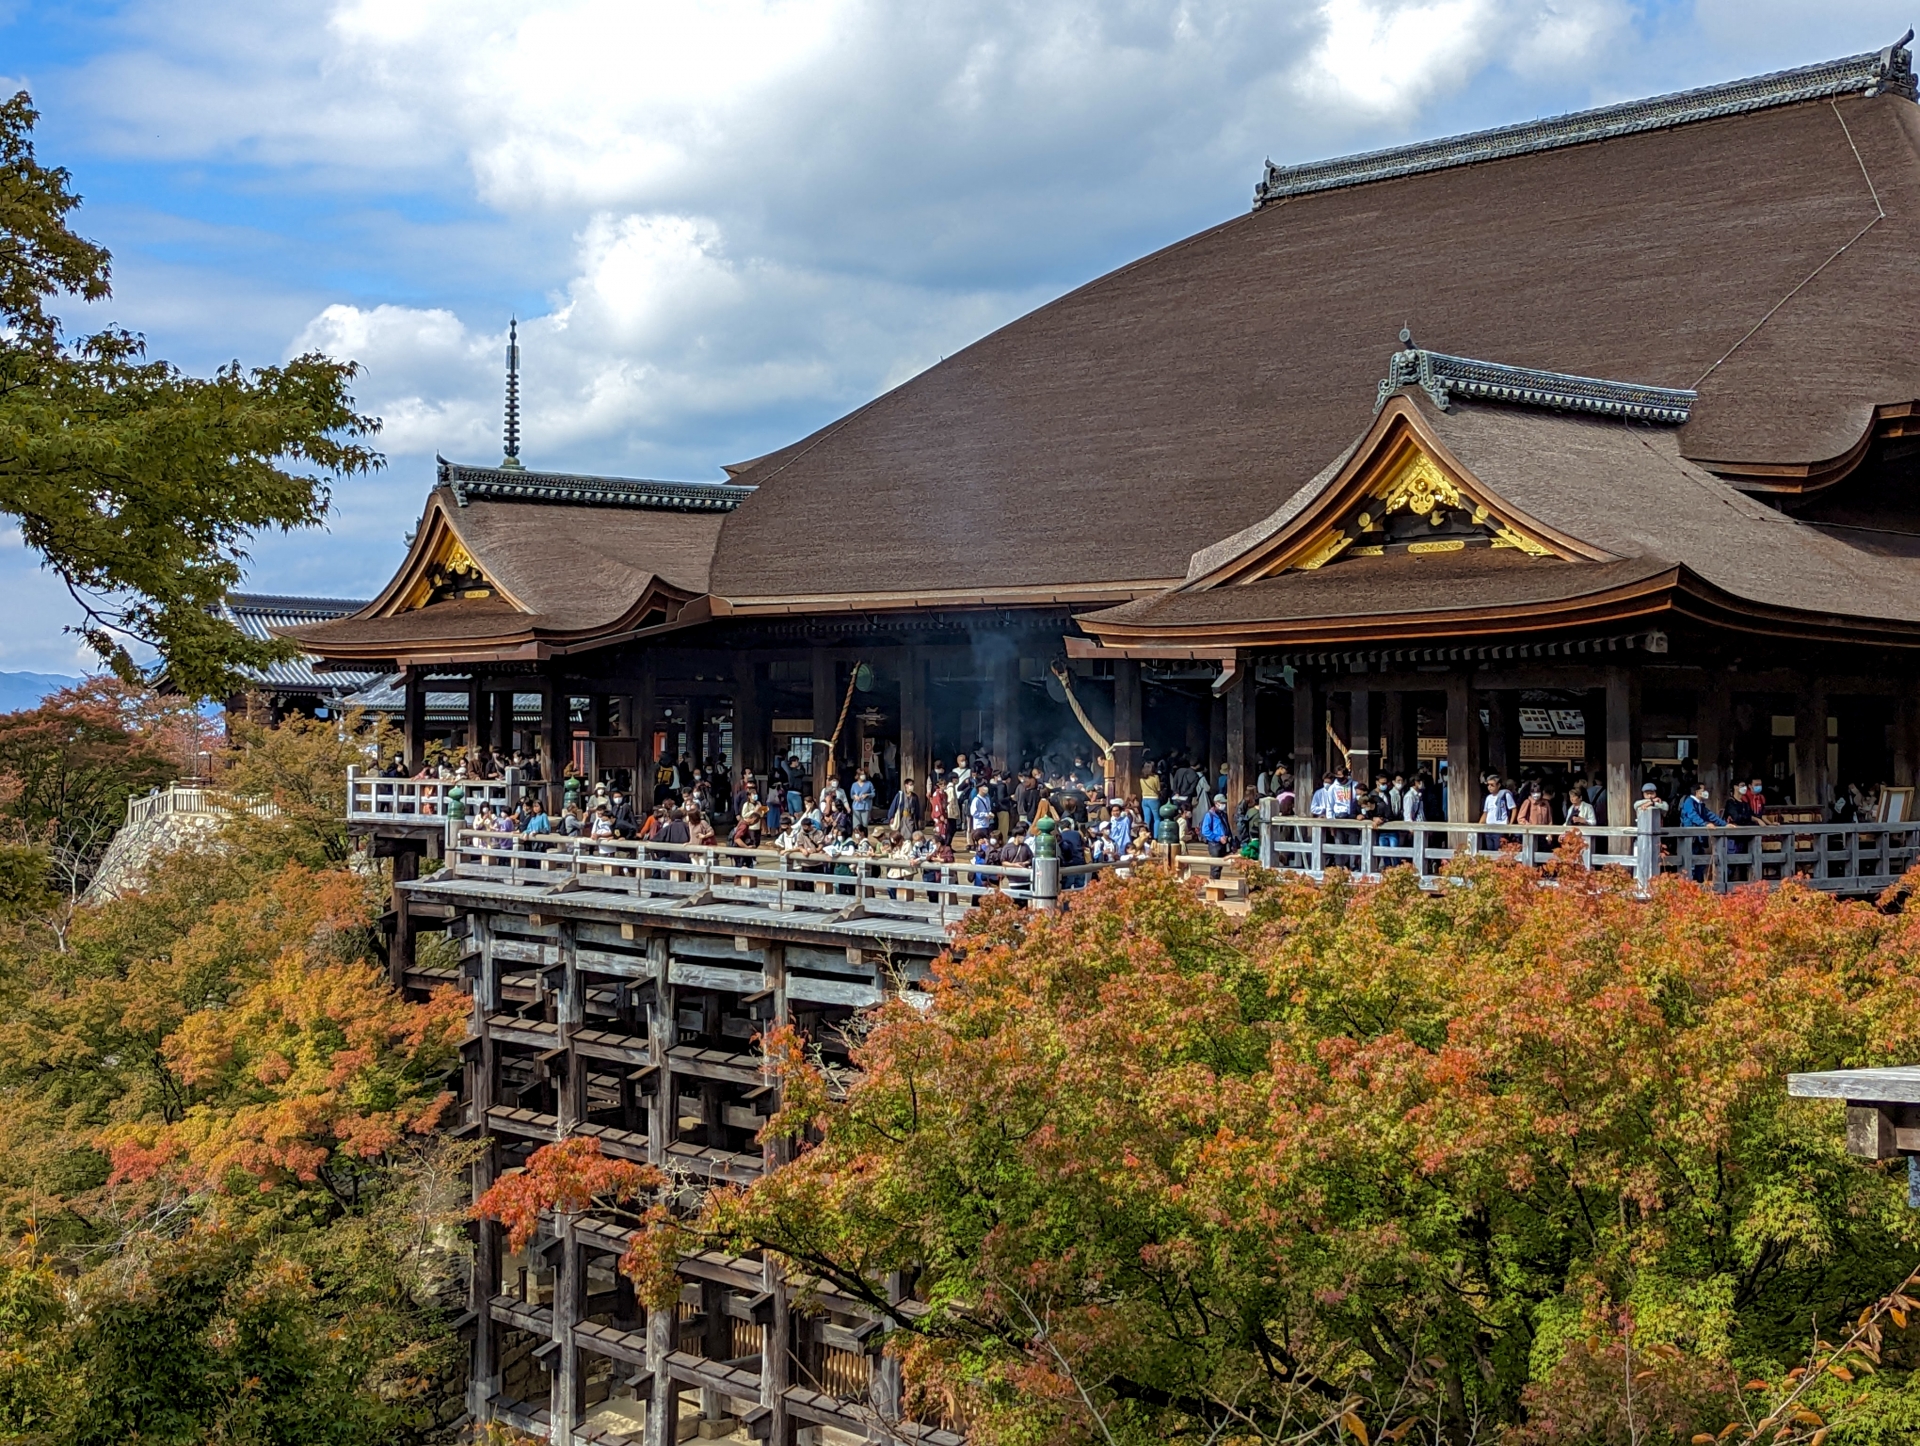 Kyoto’s Kiyomizu-dera Temple